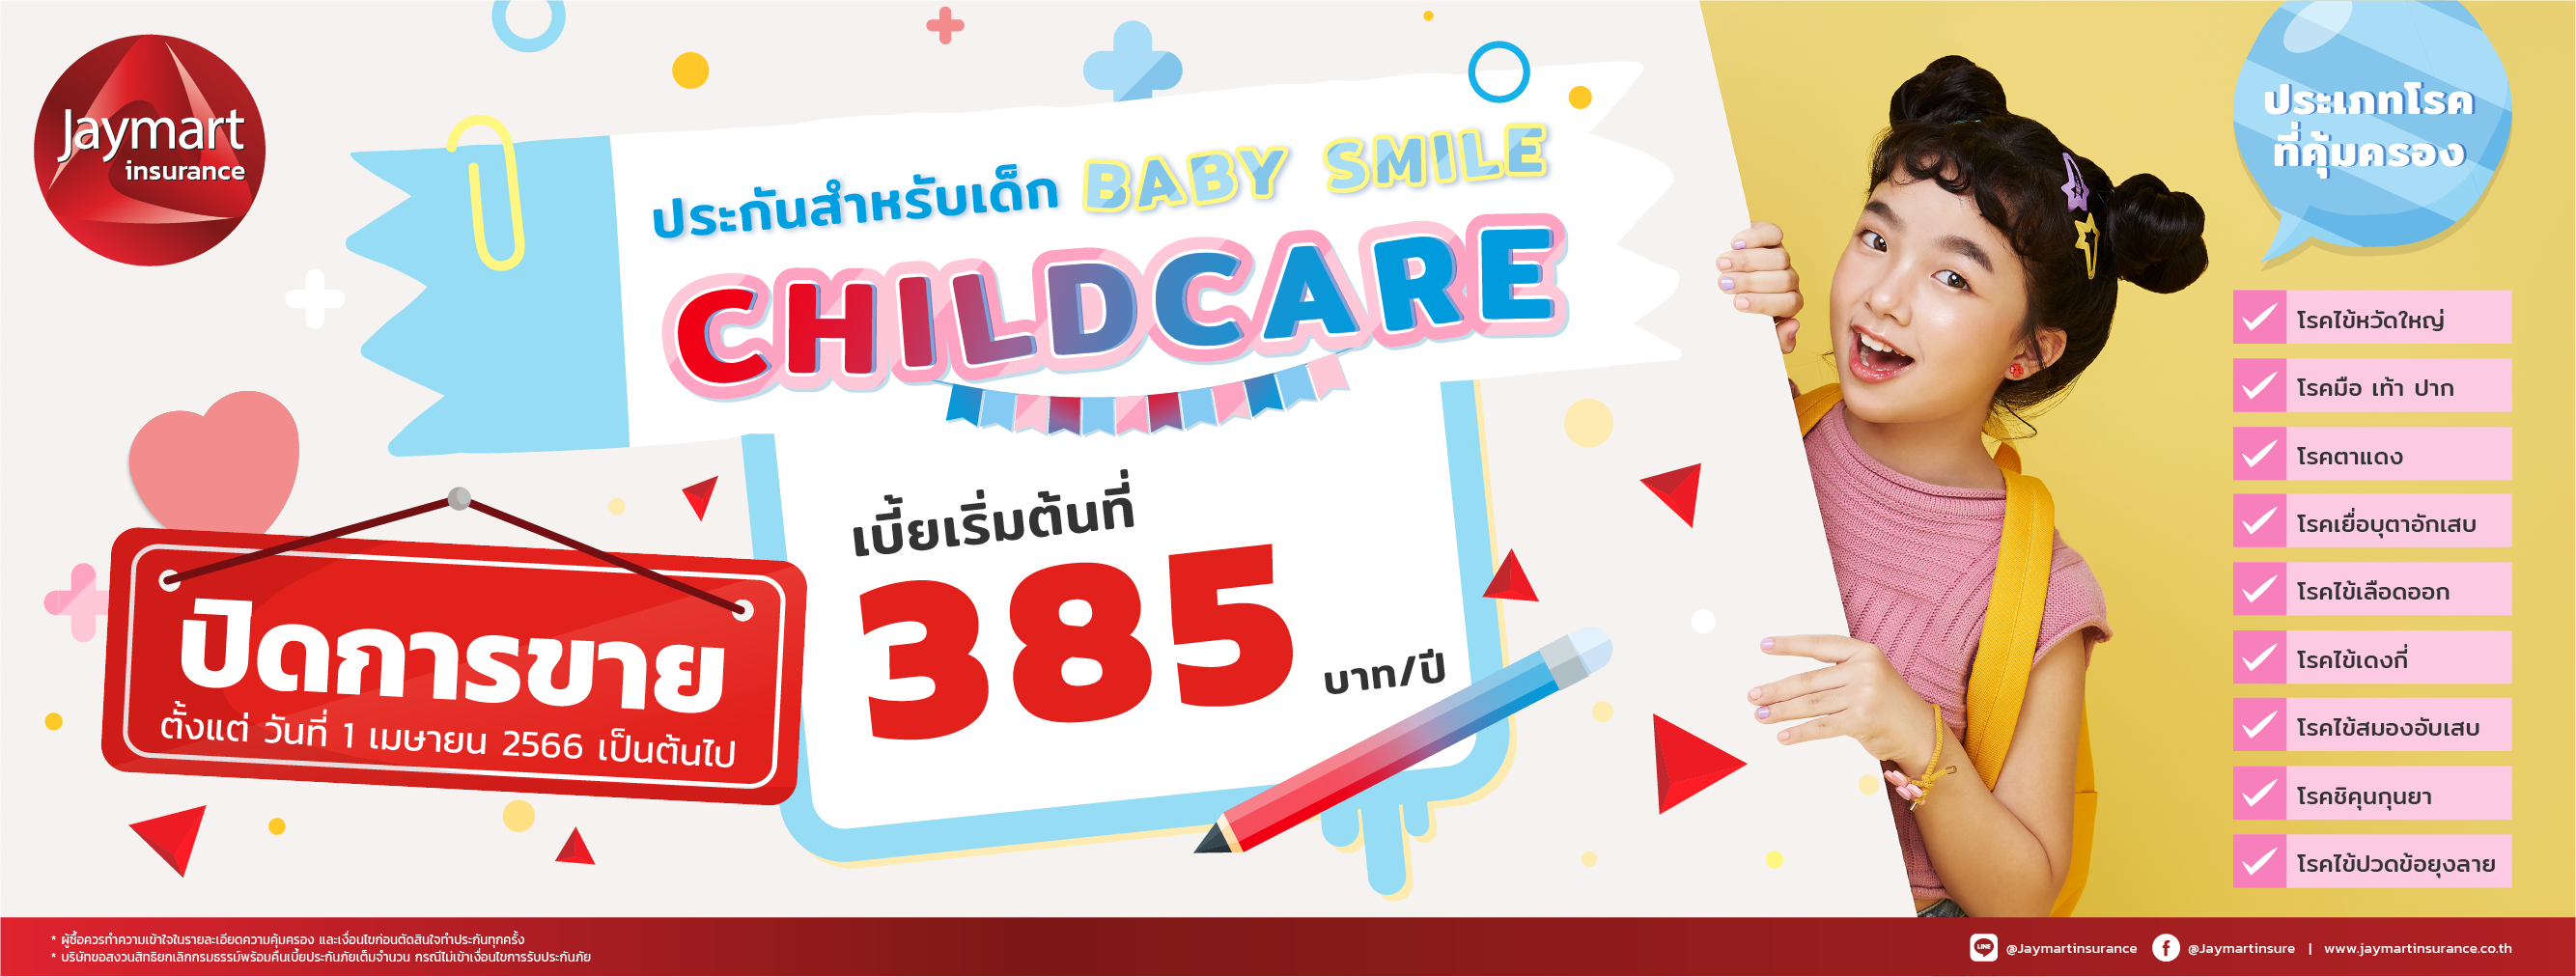 ประกันสุขภาพเด็ก Baby Smile Child Care